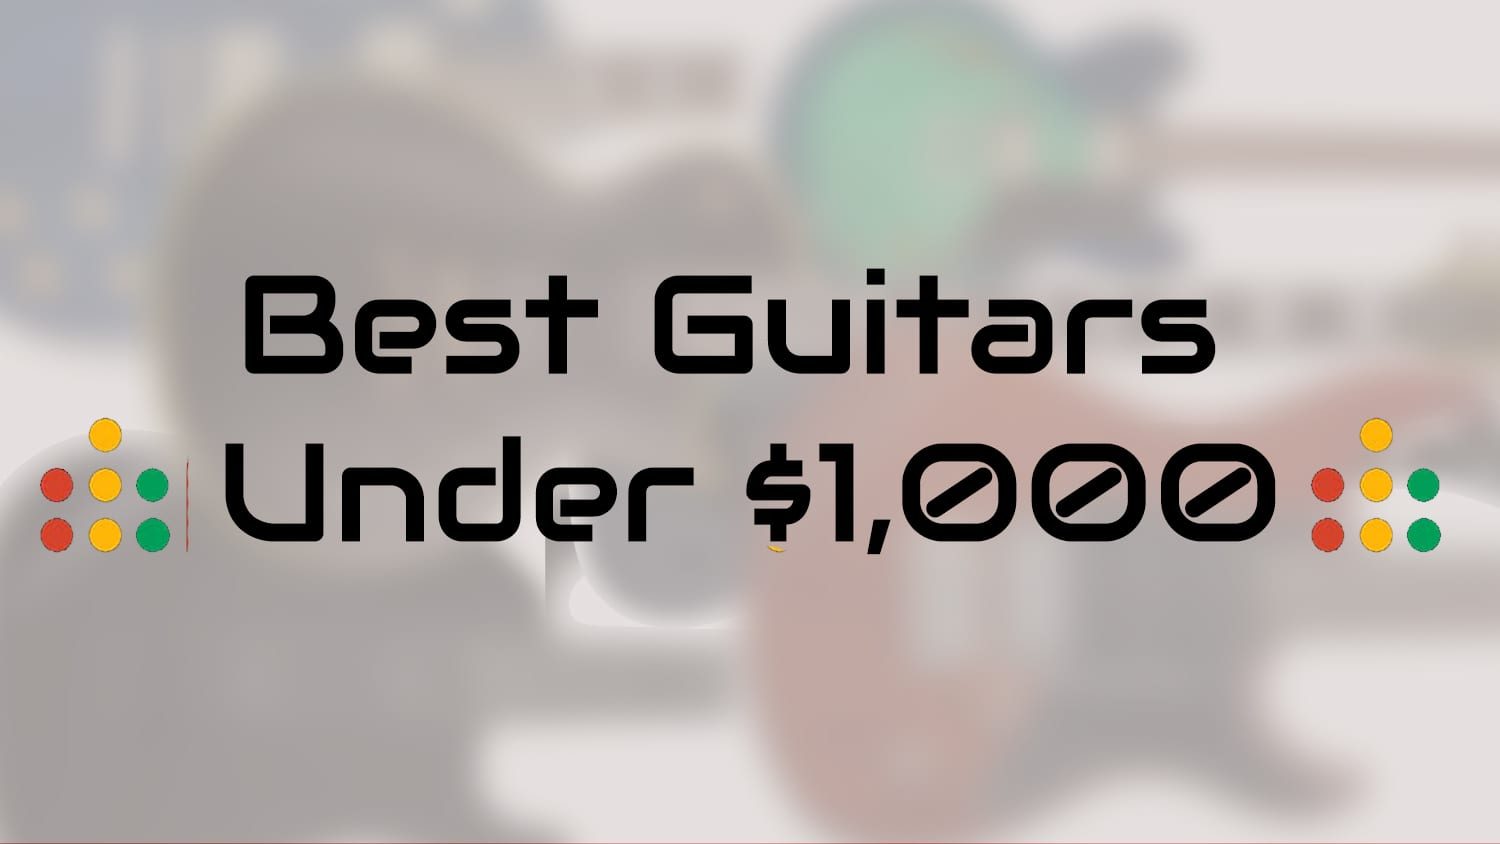 best guitars under $1,000